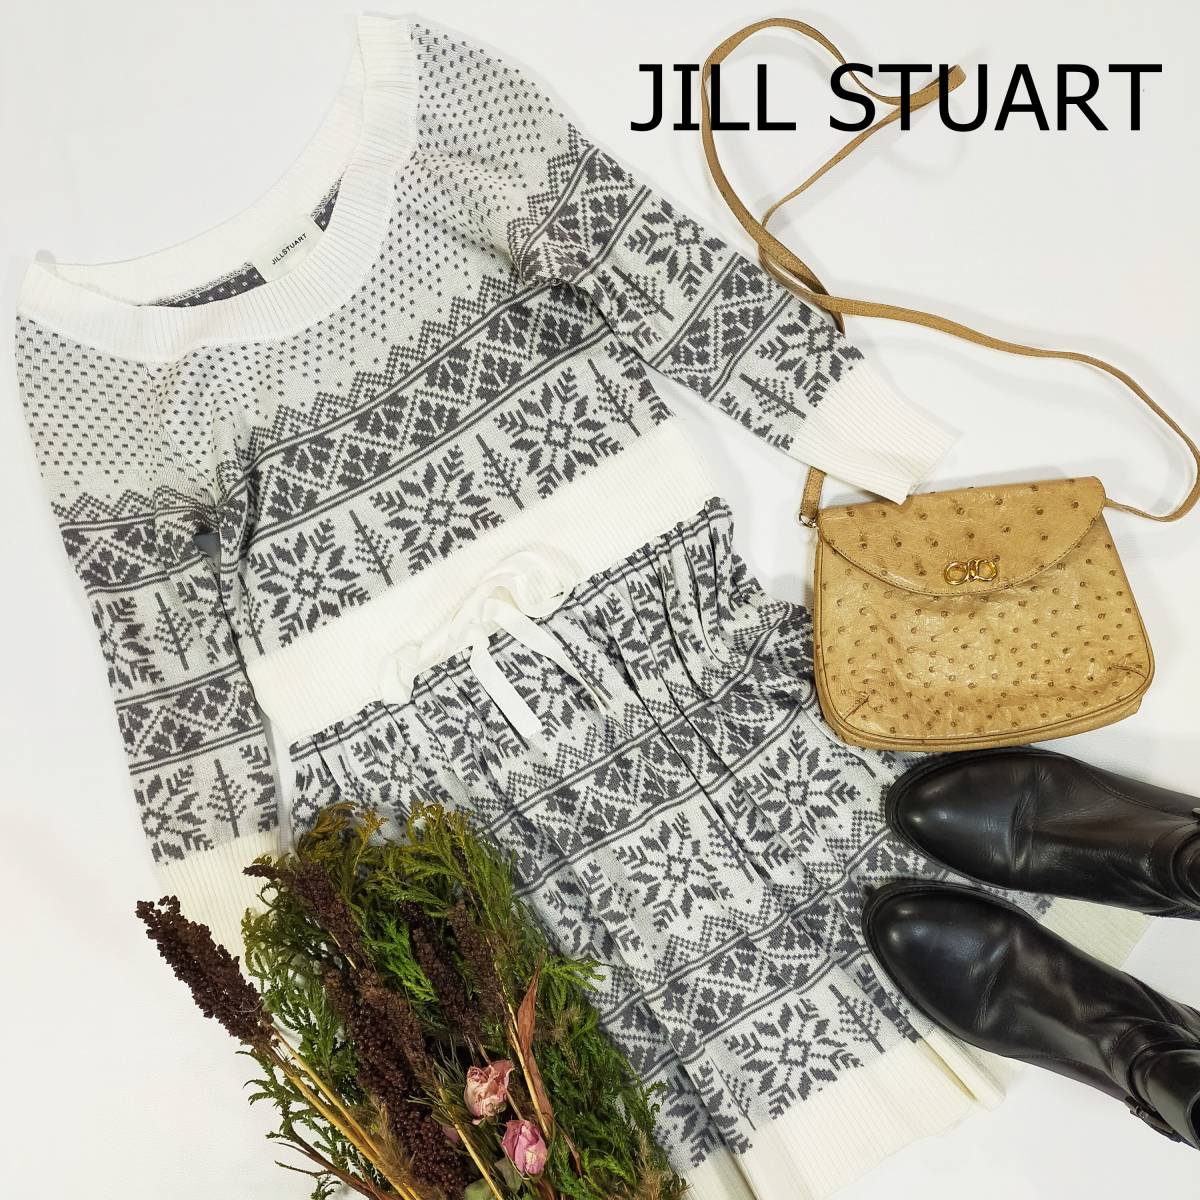  Jill Stuart JILL STUART вязаный One-piece размер S серый белый nordic рисунок сделано в Японии колено длина стрейч круглый вырез длинный рукав 1990